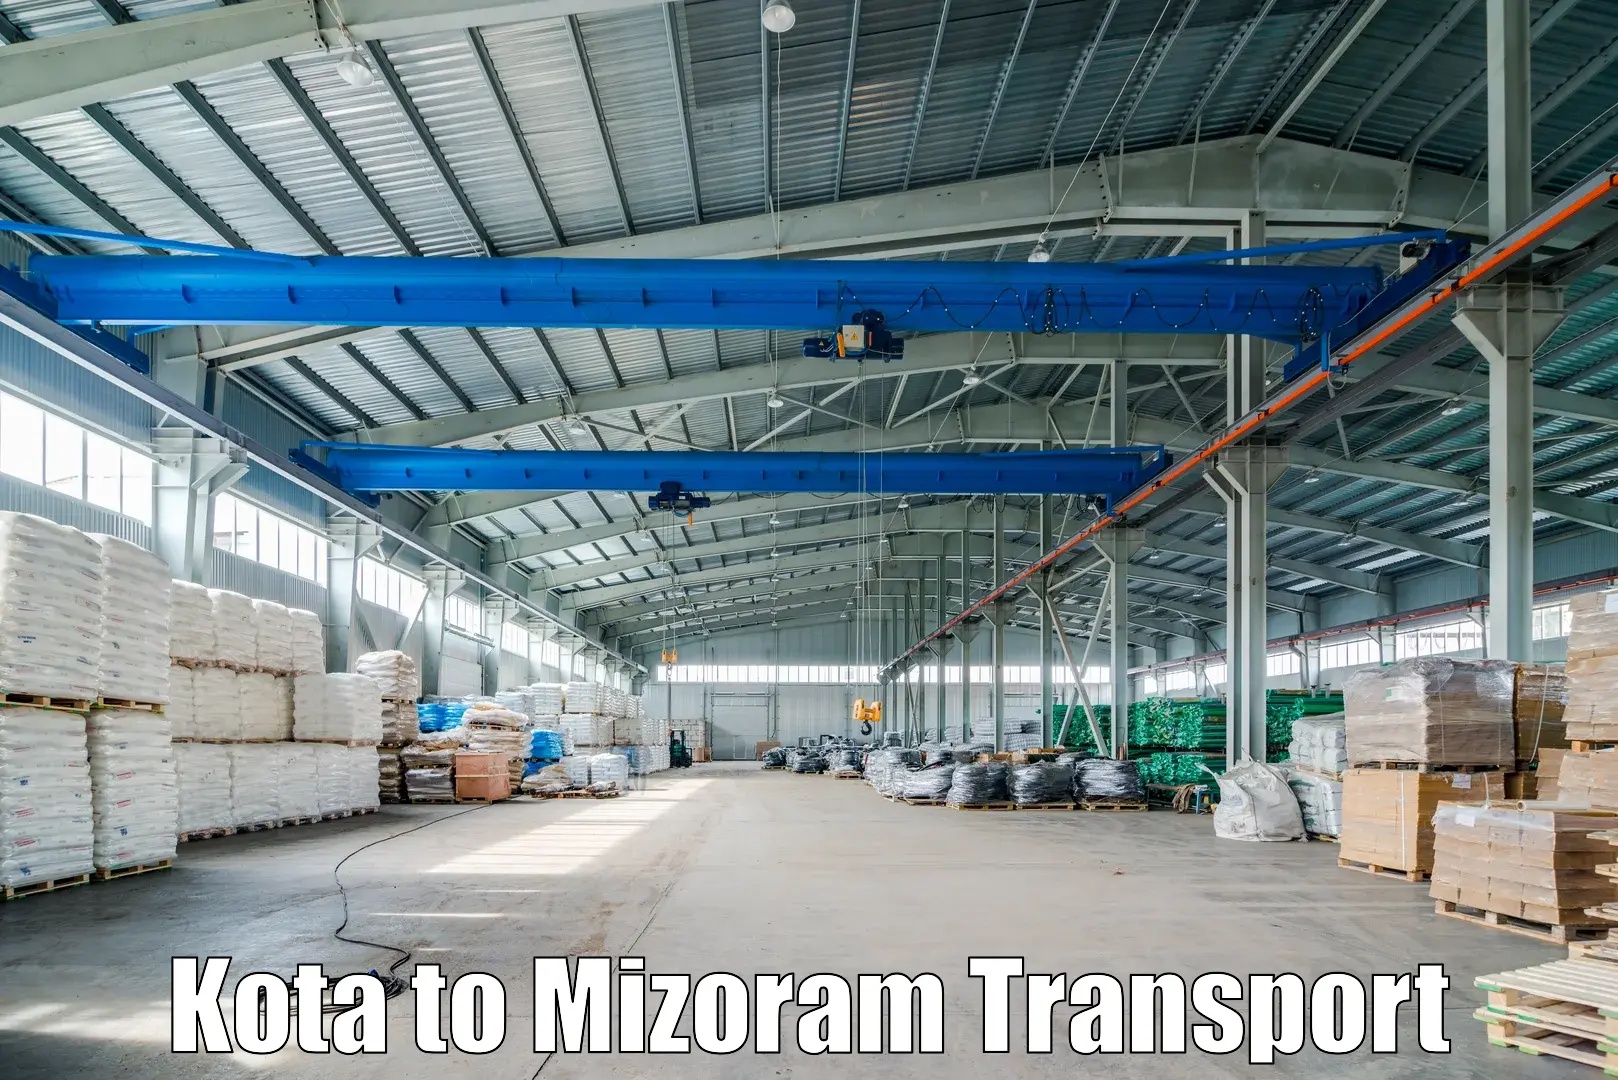 Land transport services in Kota to Mizoram